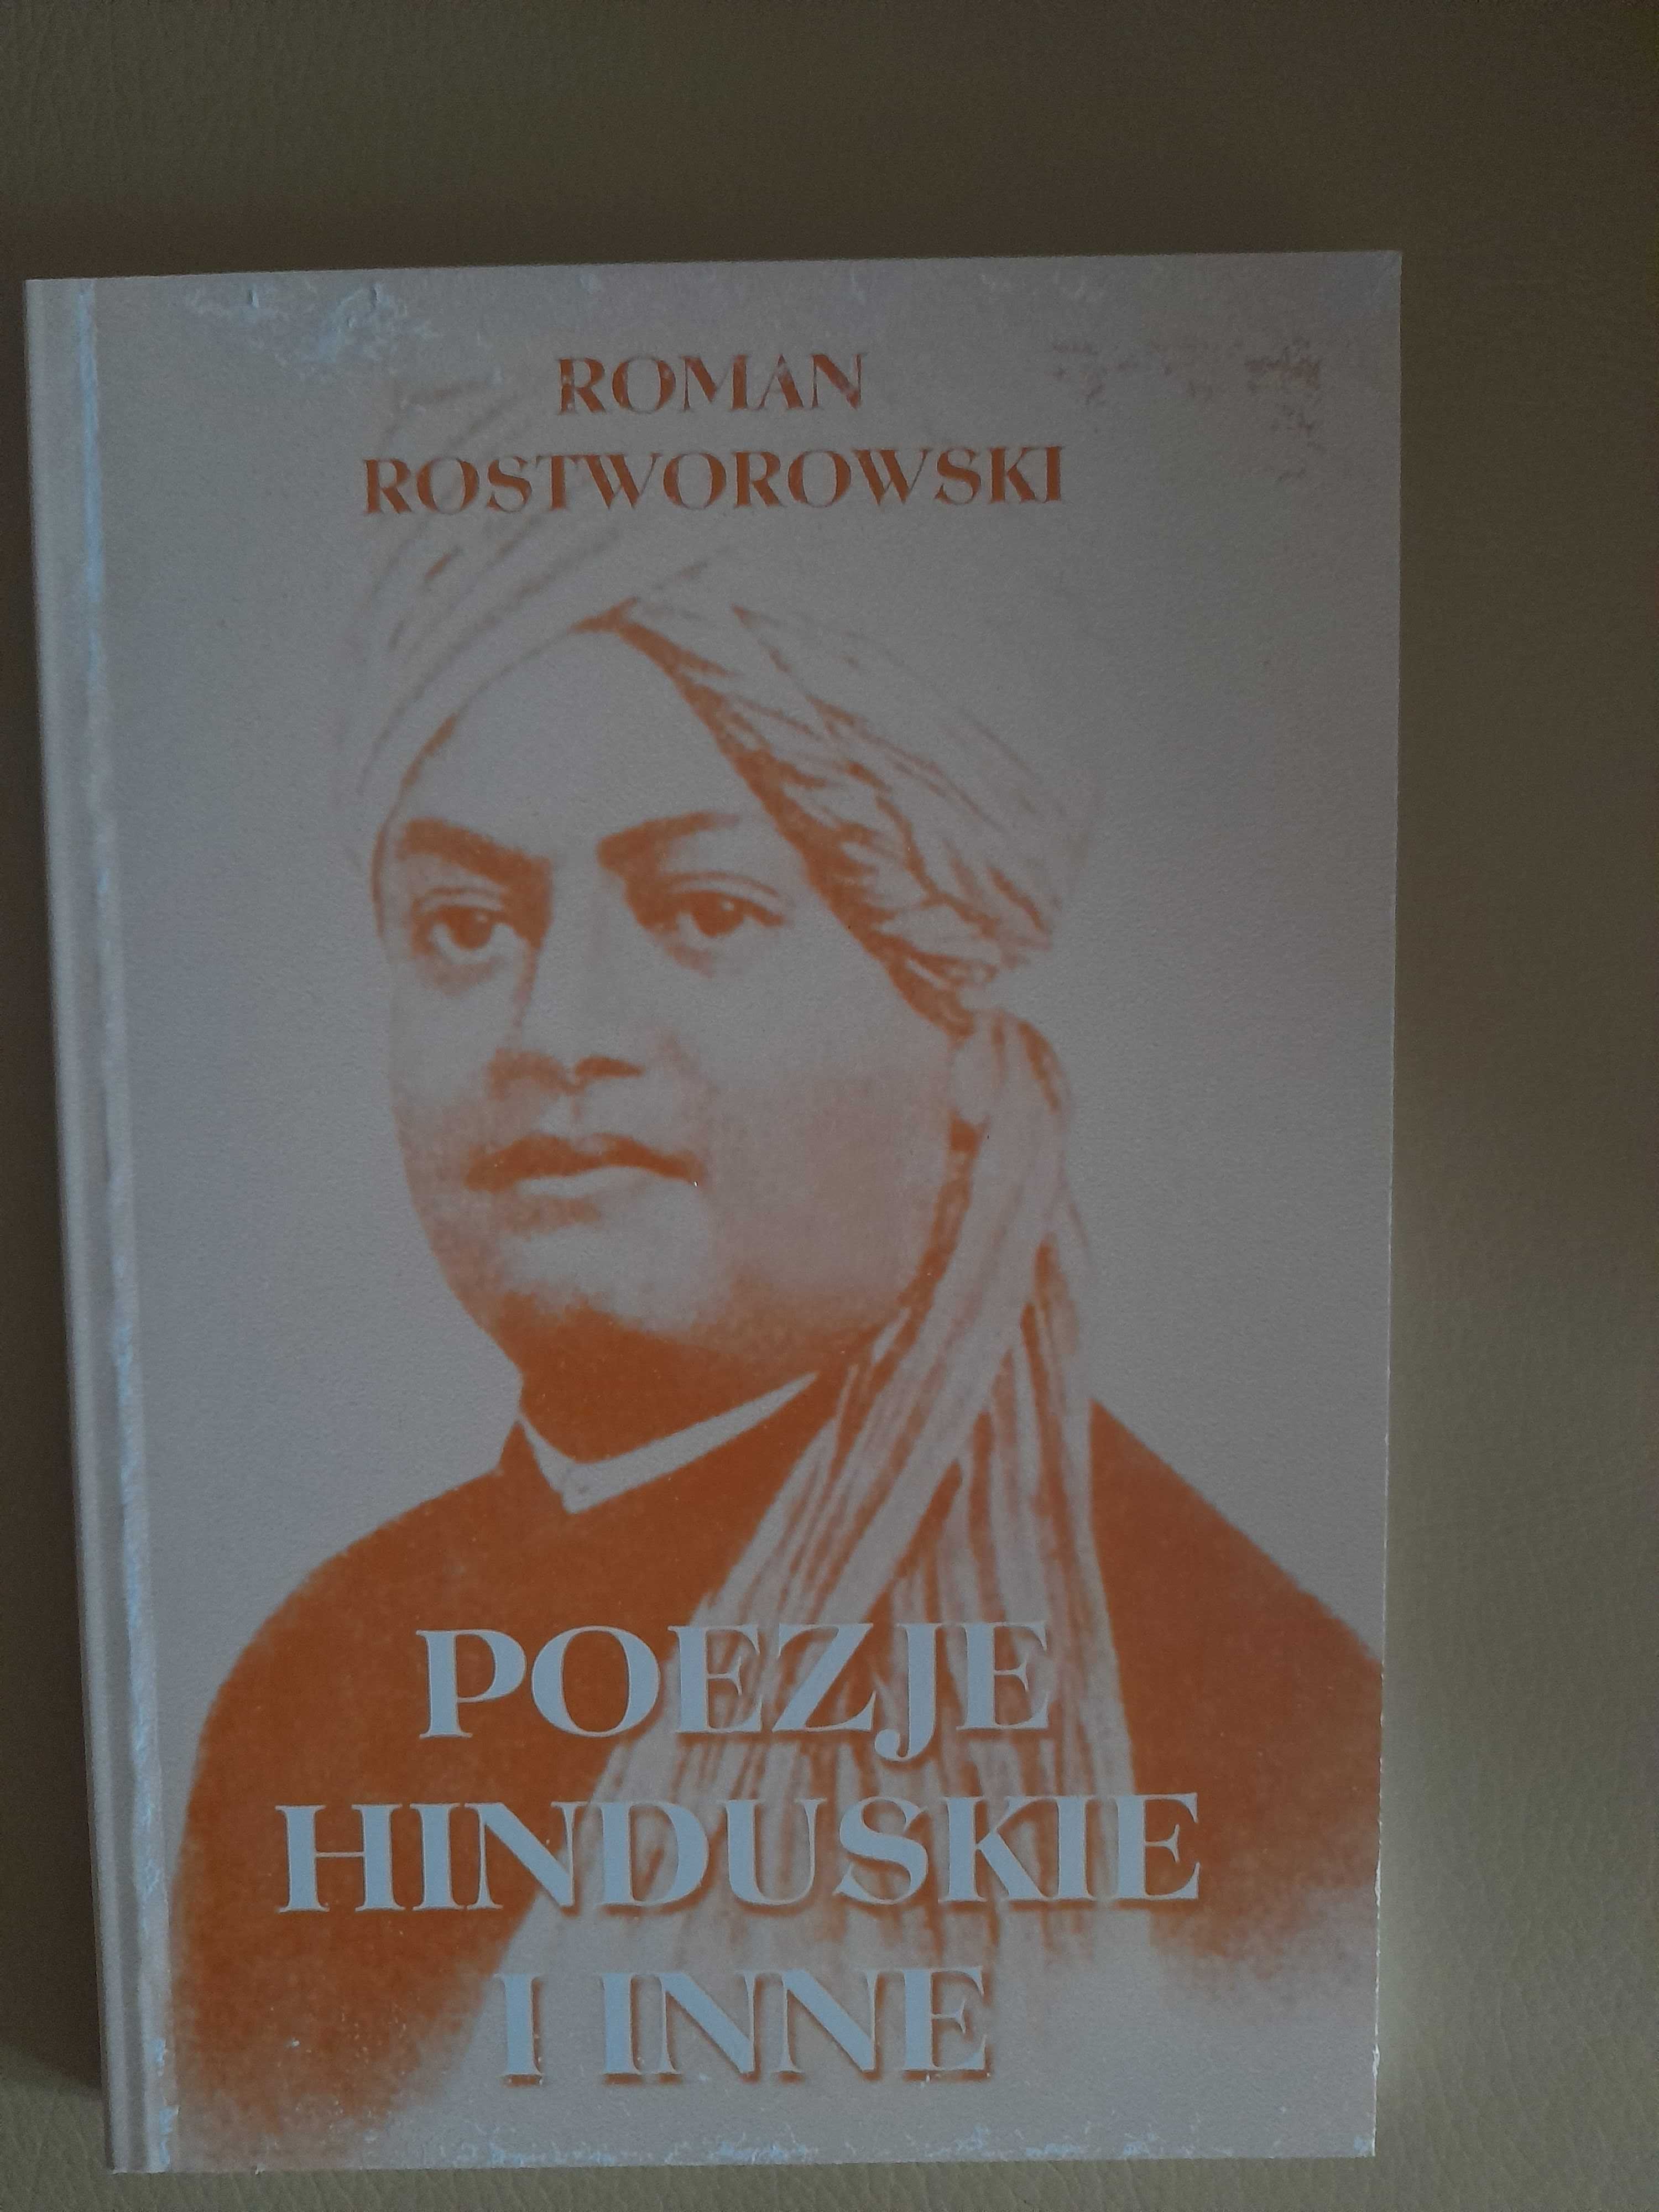 Roman Rostworowski "Poezje hinduskie i inne"